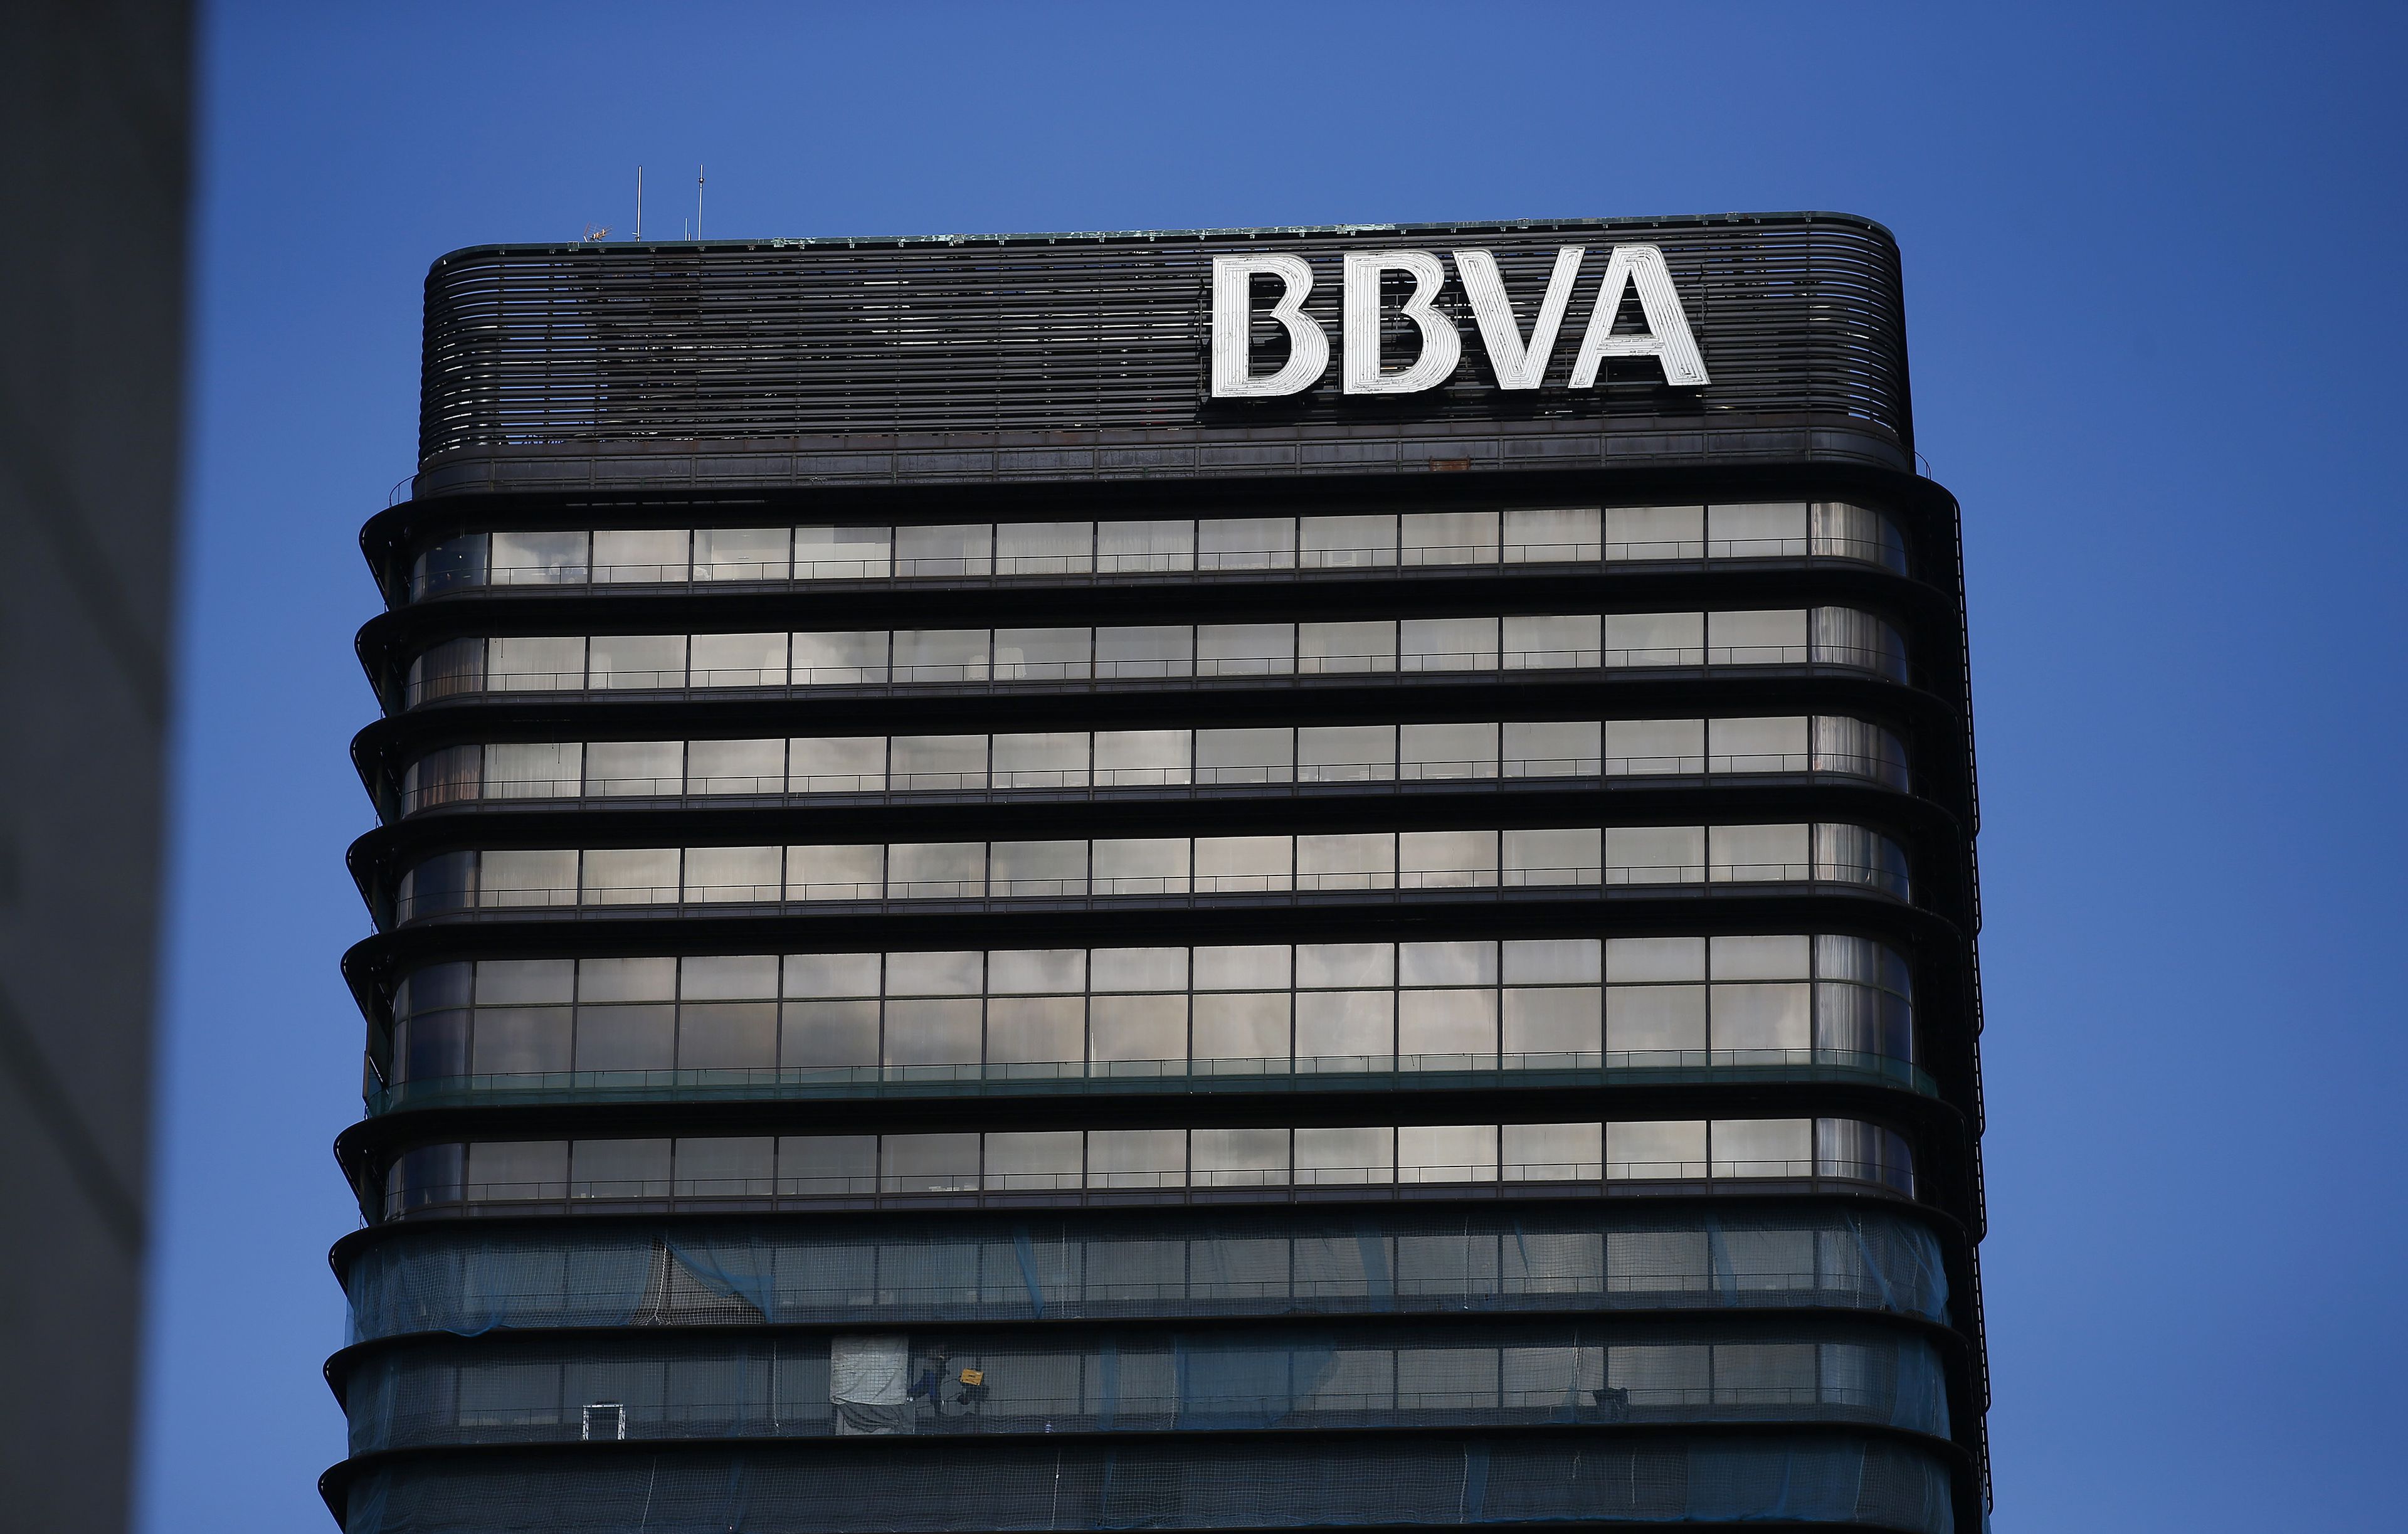 La foto del día: BBVA vende 300 oficinas por 100 millones de euros, según Bloomberg. El movimiento se produce en medio de su opa hostil a Sabadell.